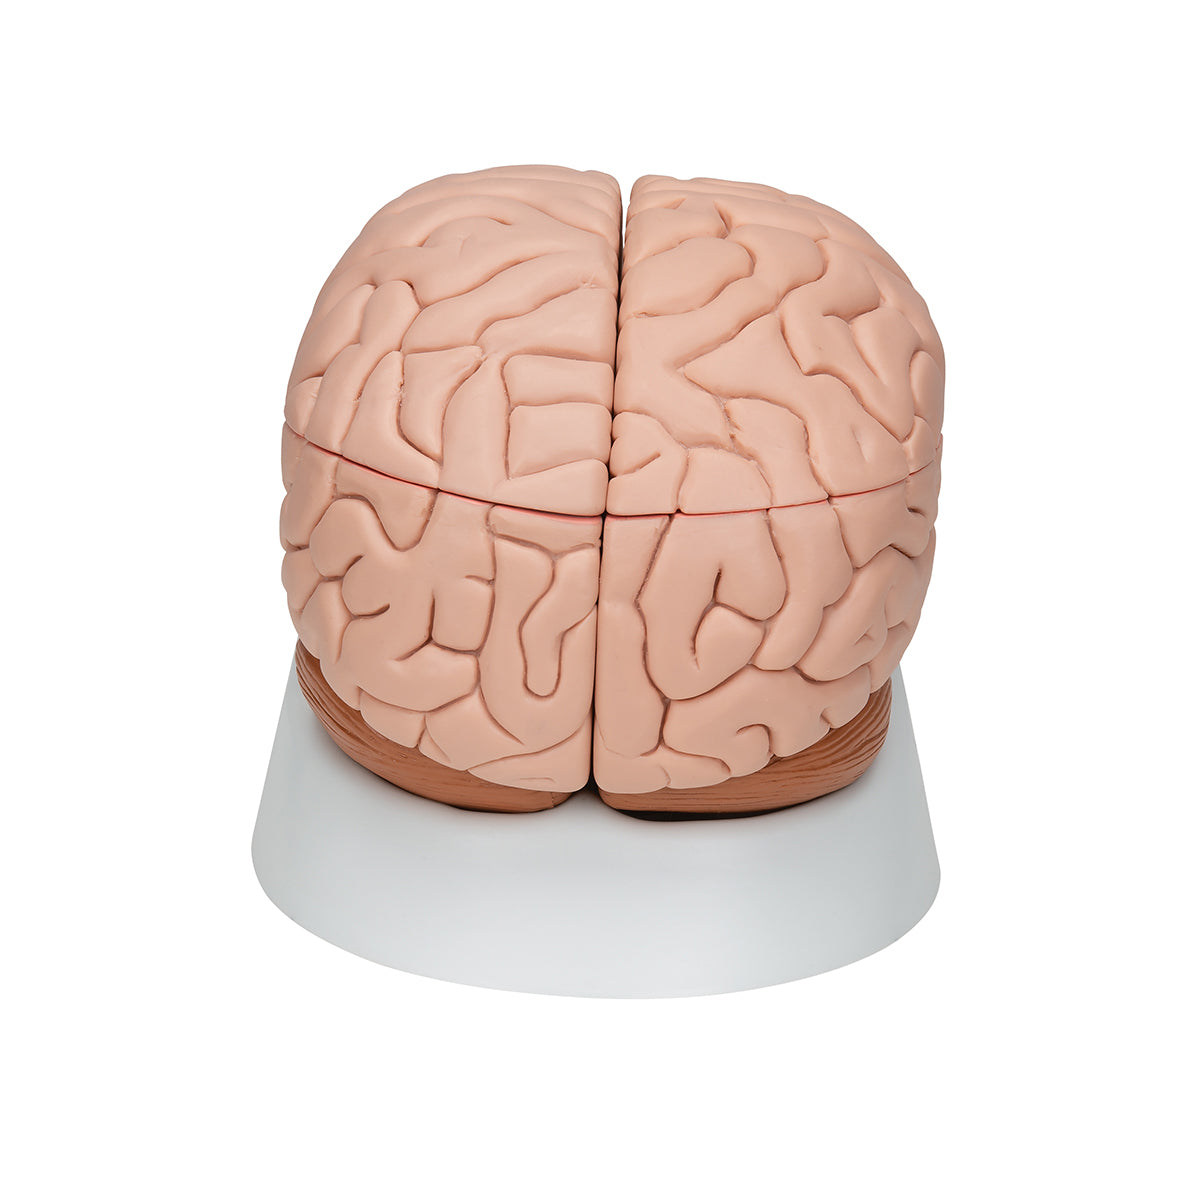 Hjernemodel med et mindre naturtro udseende. Kan adskilles i 8 dele